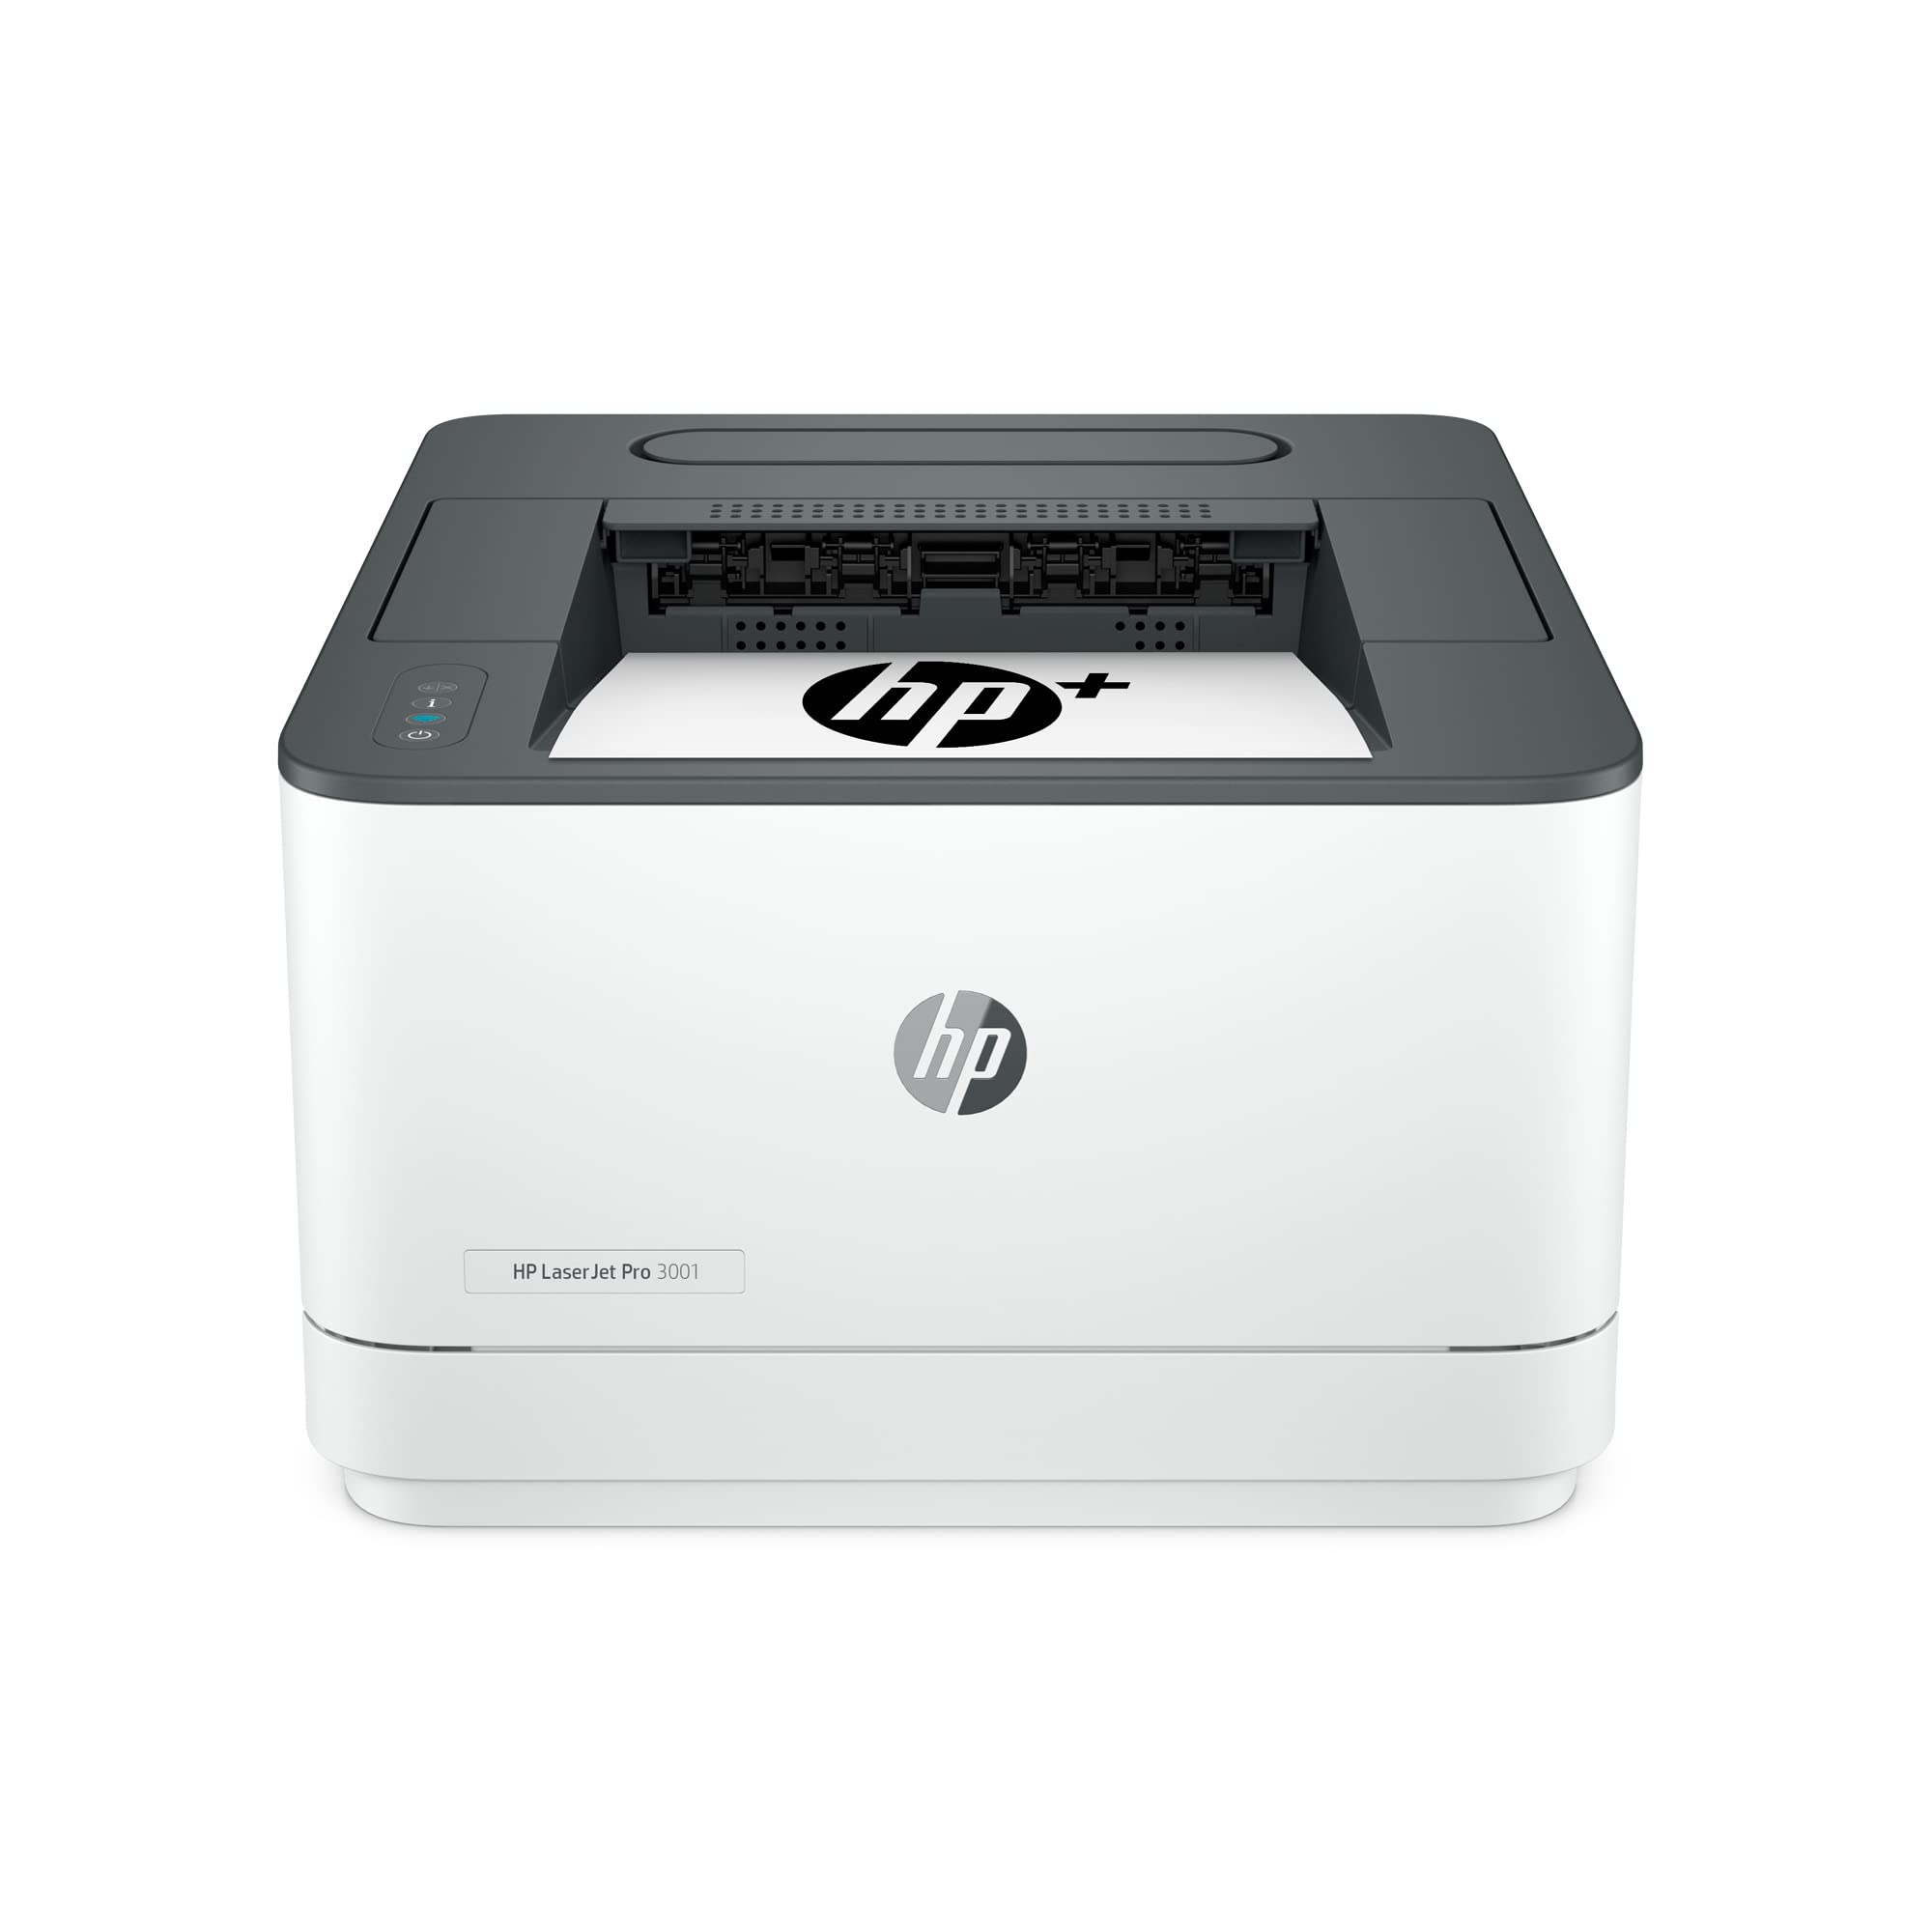 HP LaserJet Pro 3001dwe 无线黑白打印机 + 智能办公功能